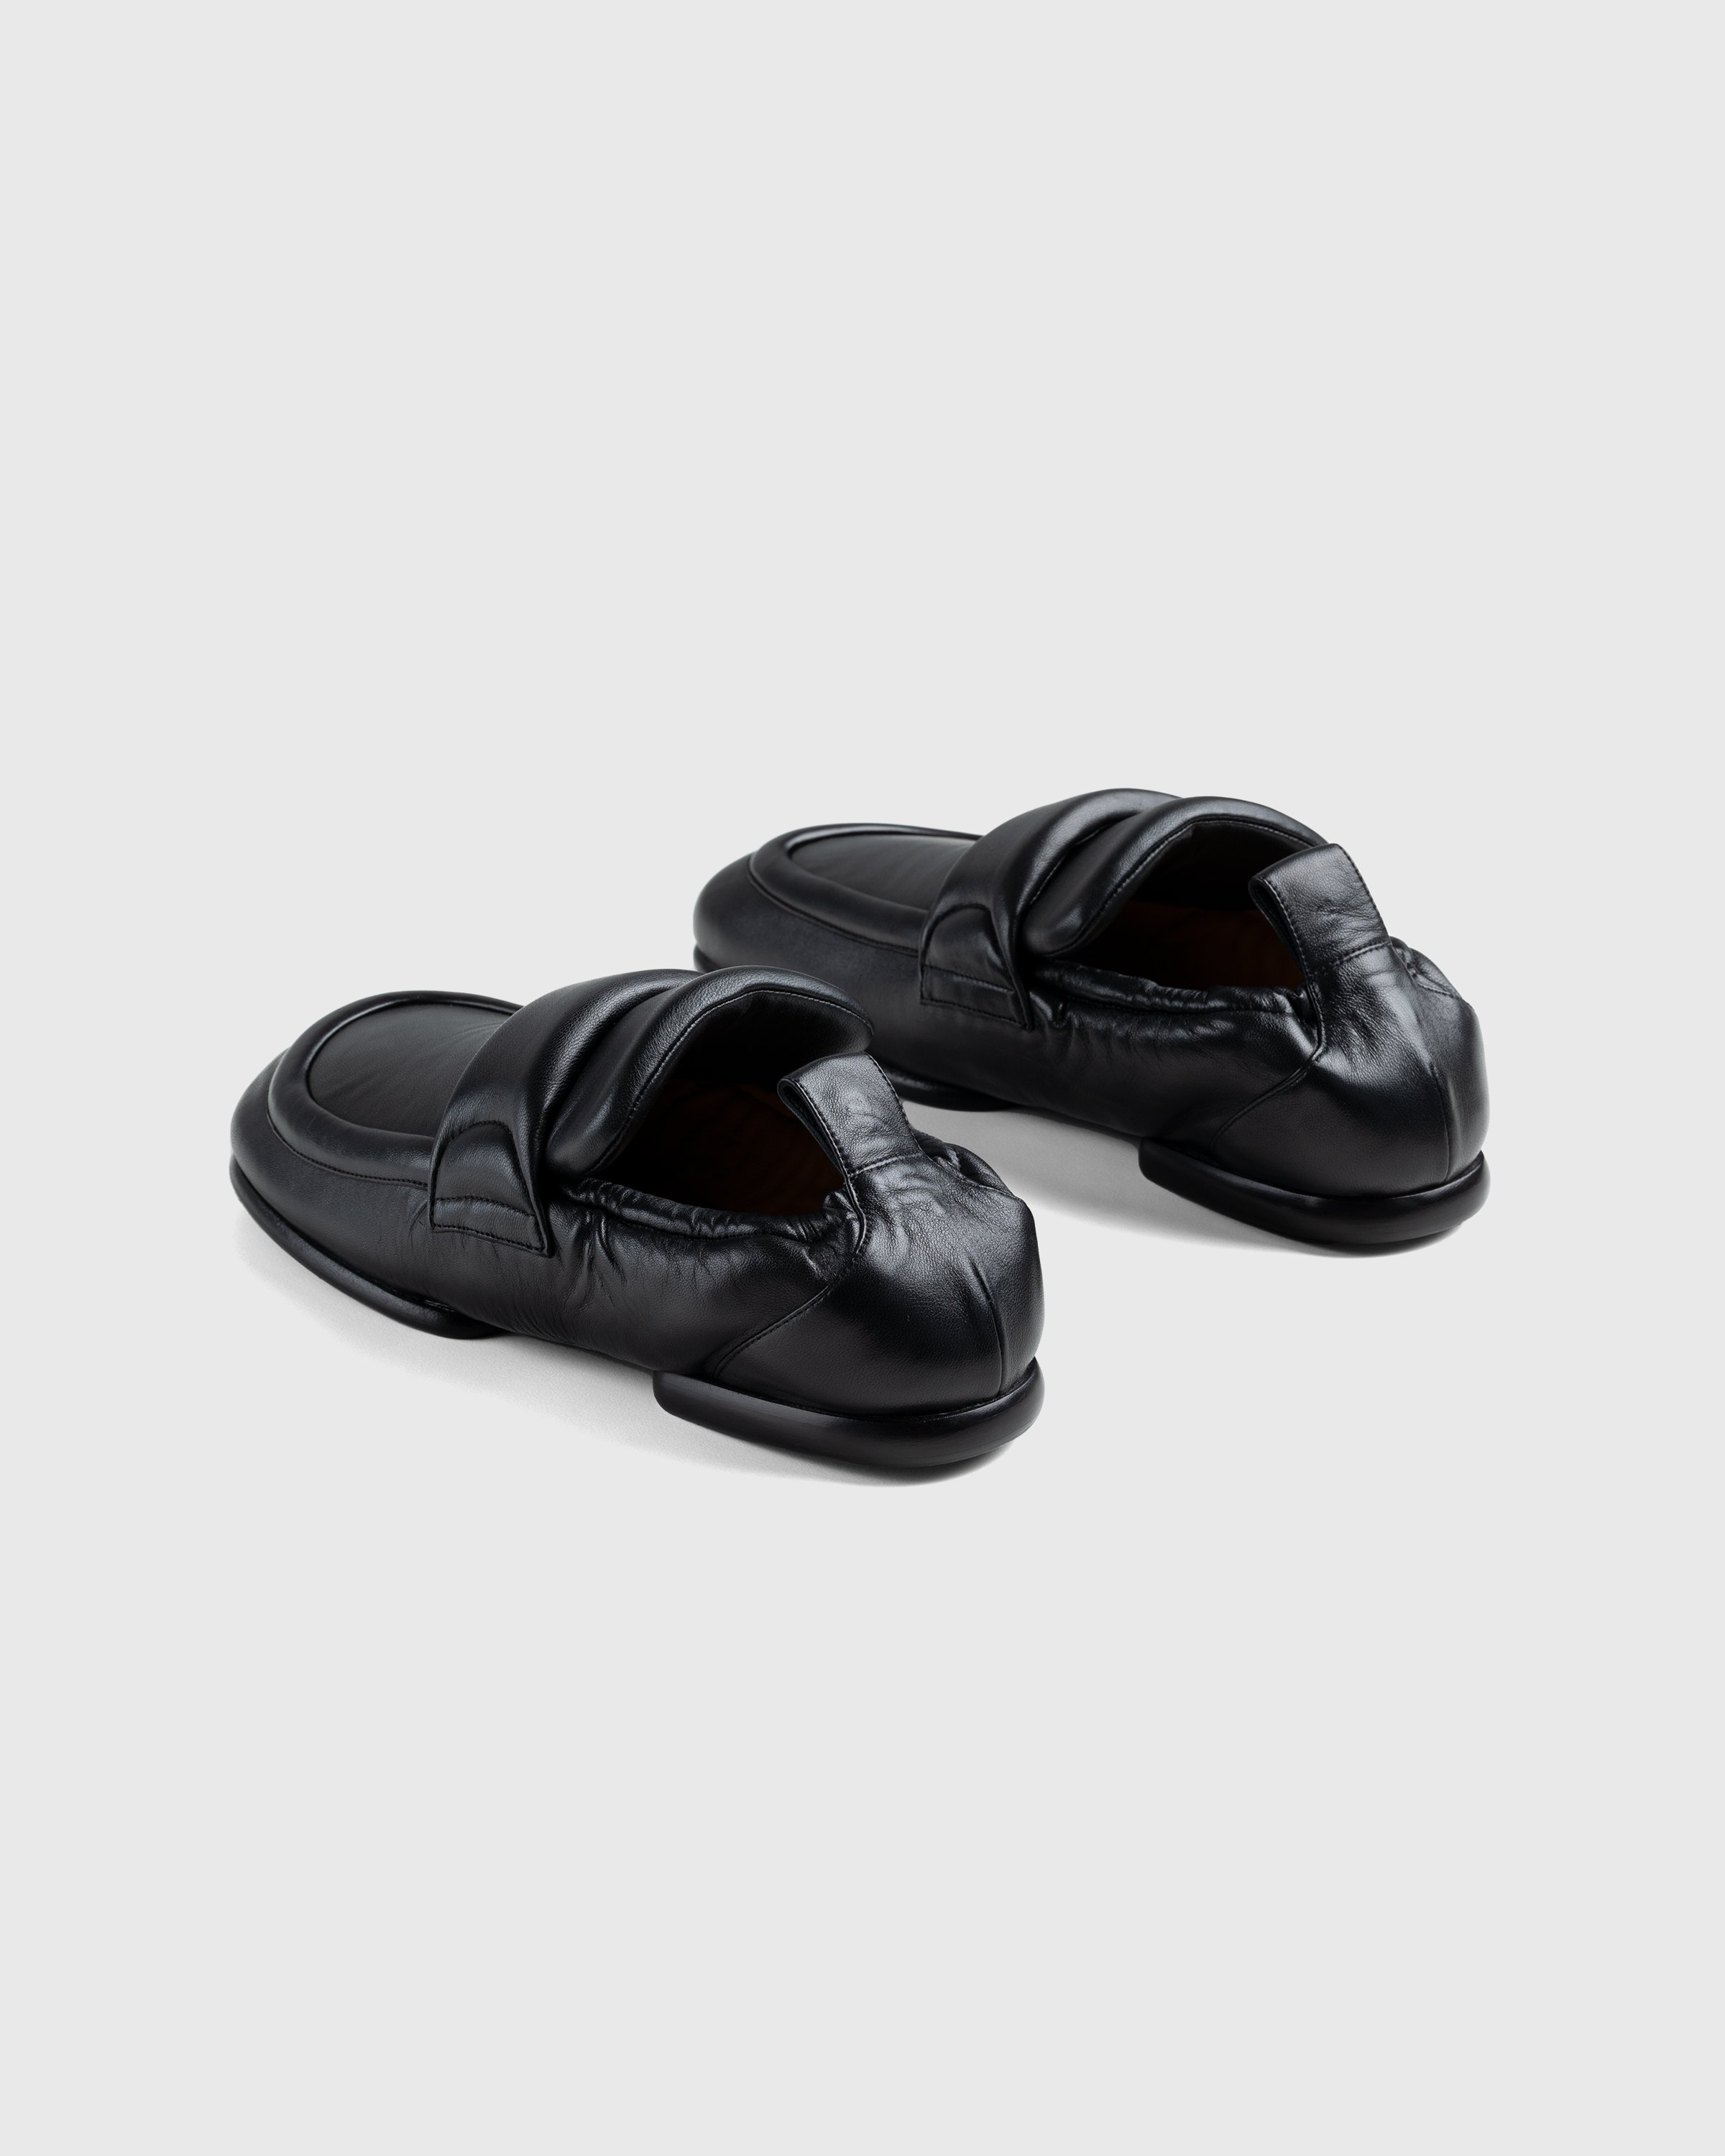 Dries van Noten - Padded Loafers - Footwear - Black - Image 4